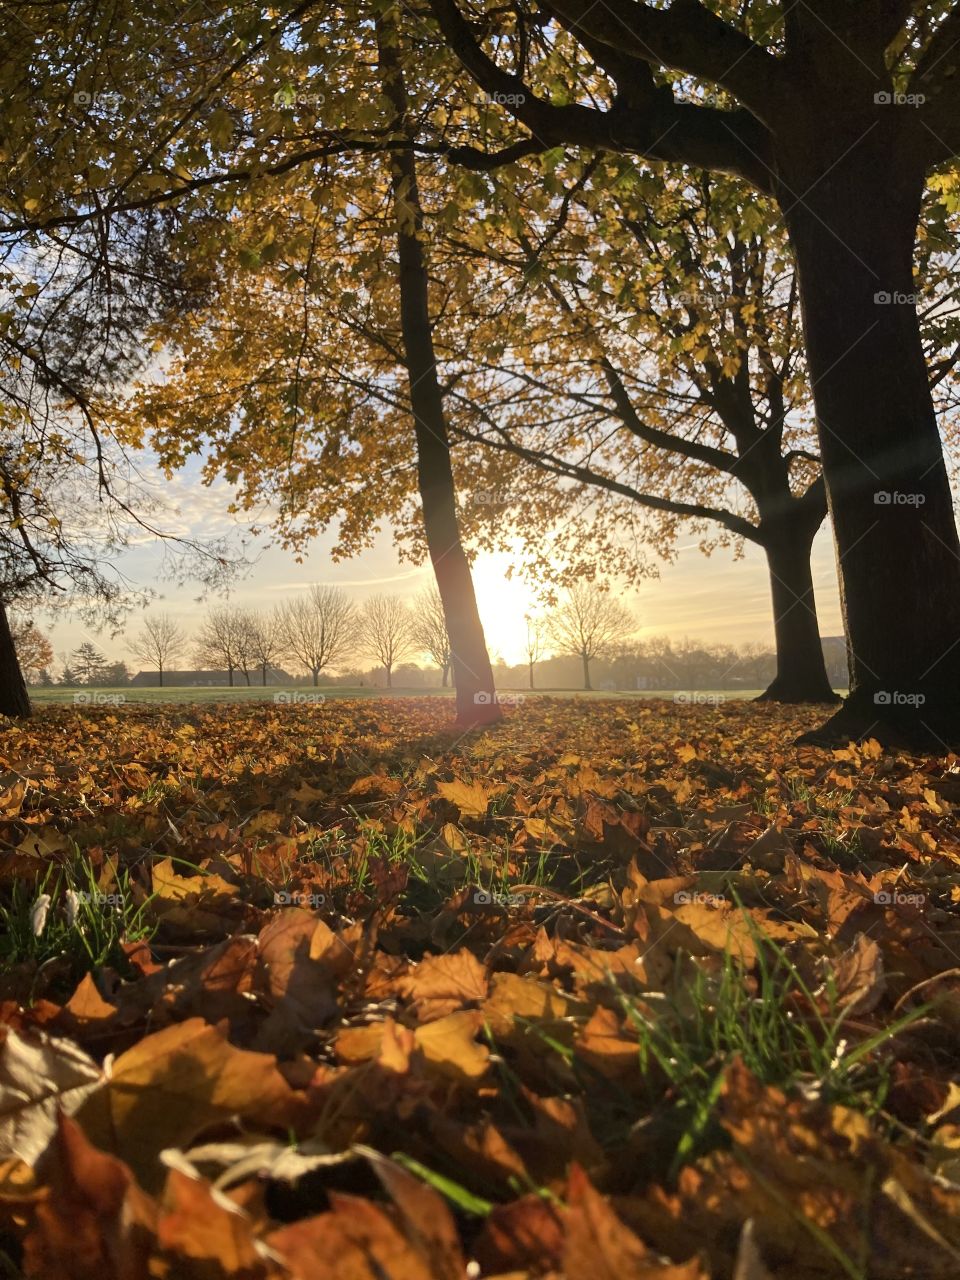 A beautiful golden autumnal run